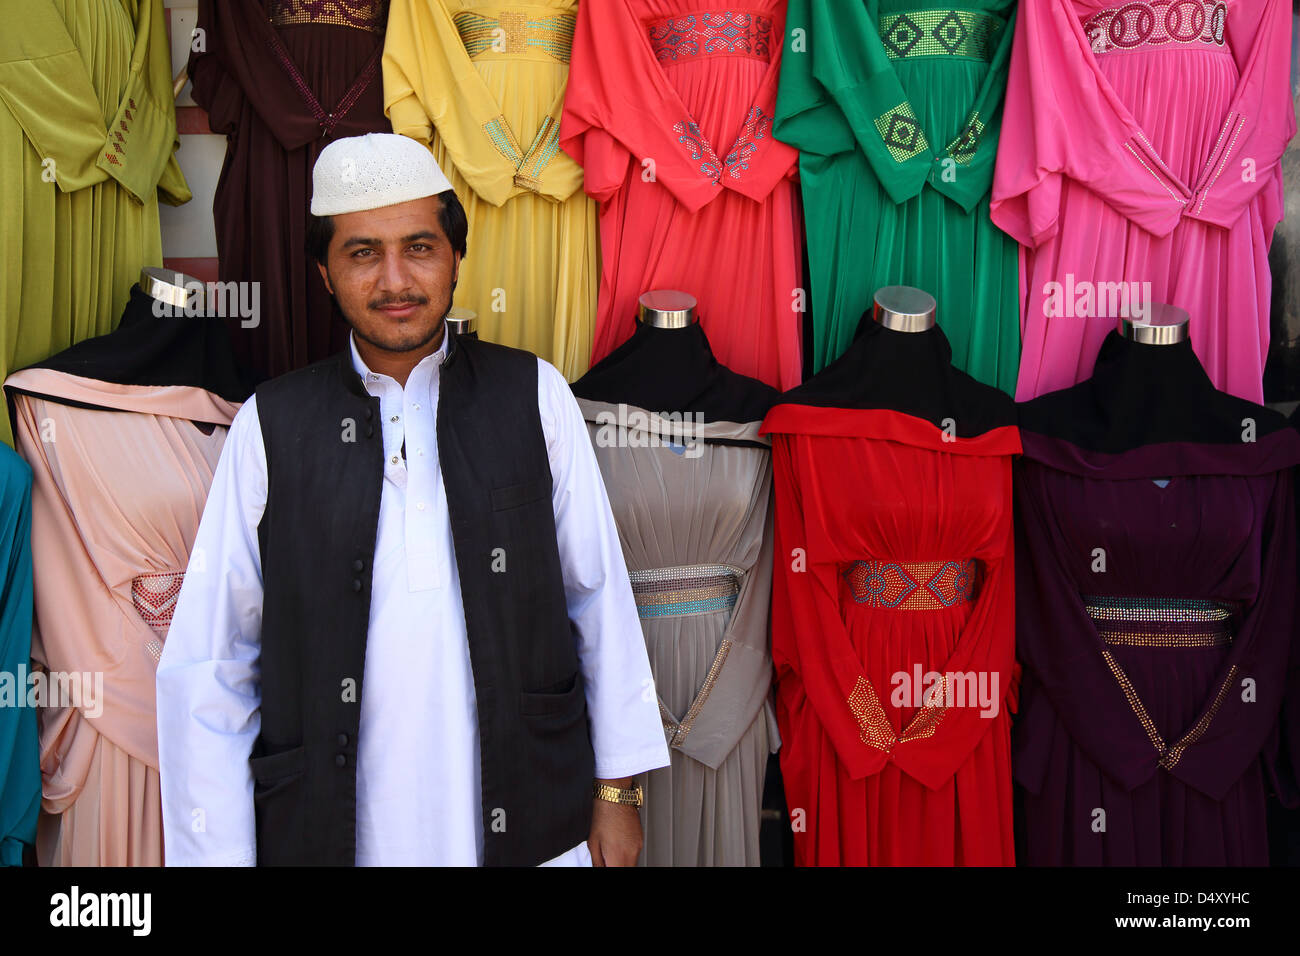 Portrait de propriétaire de boutique de vêtements colorés, Dubaï, Émirats Arabes Unis Banque D'Images